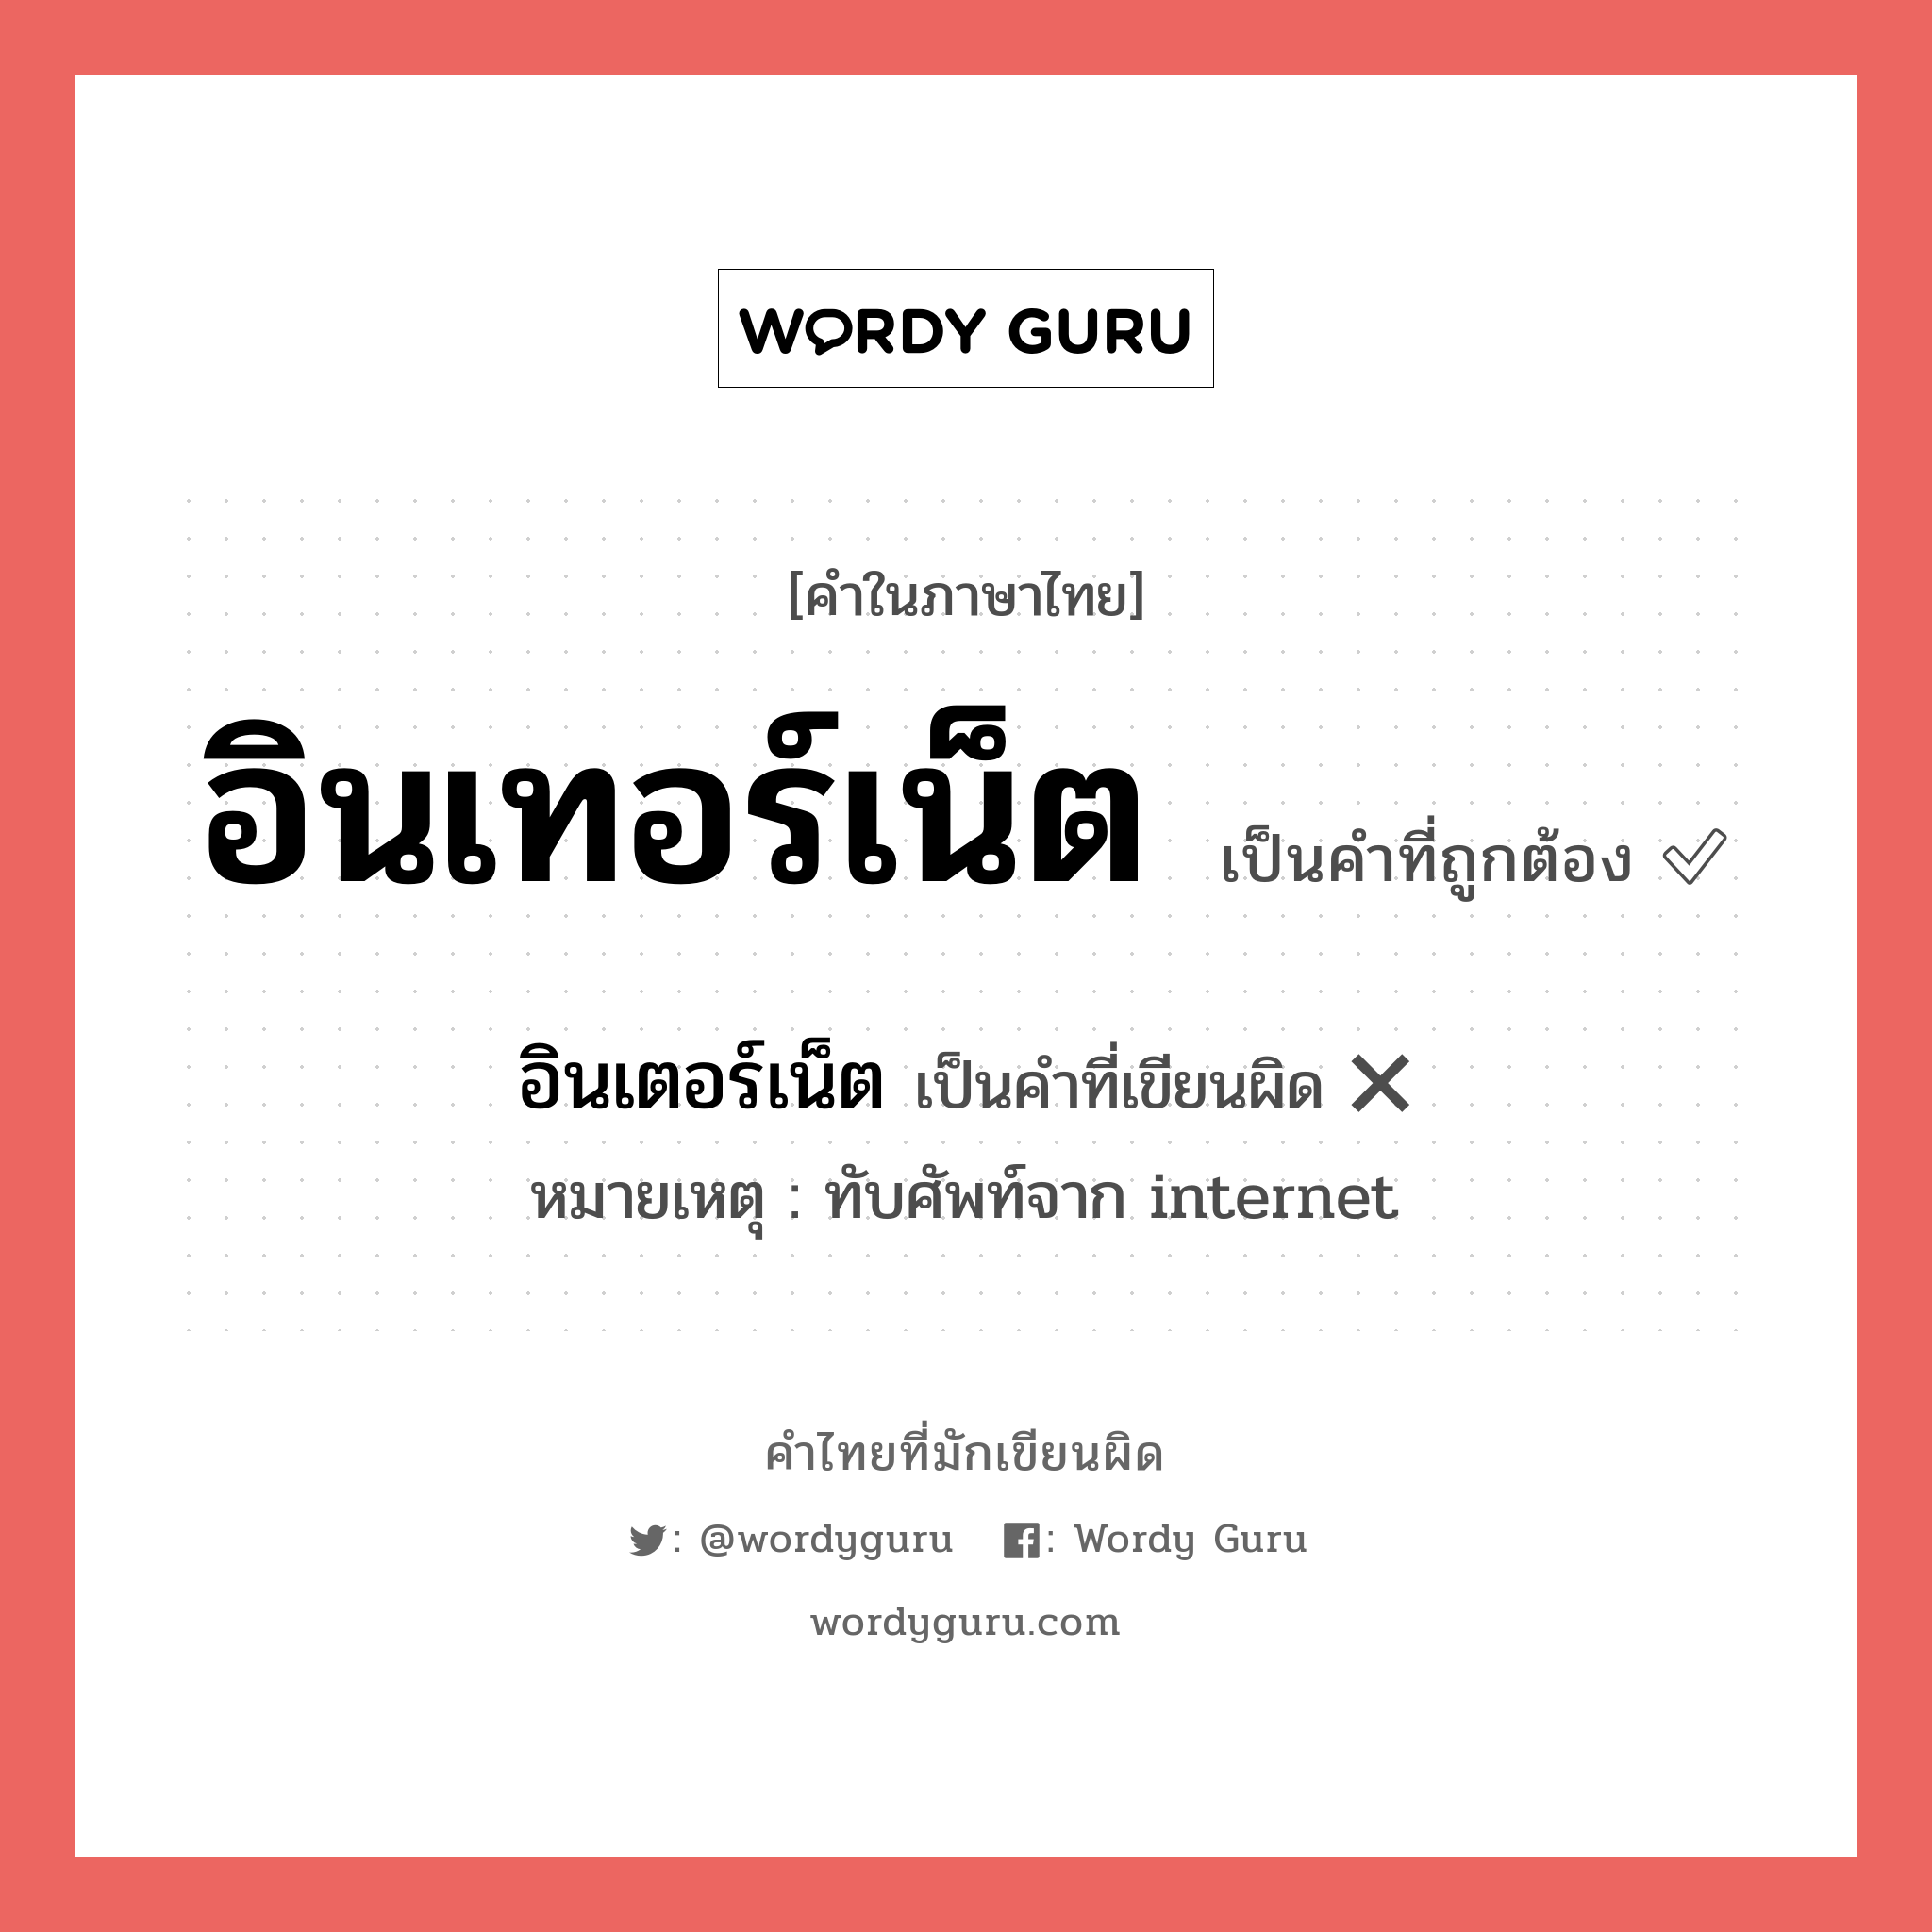 อินเตอร์เน็ต หรือ อินเทอร์เน็ต คำไหนเขียนถูก?, คำในภาษาไทยที่มักเขียนผิด อินเตอร์เน็ต คำที่ผิด ❌ อินเทอร์เน็ต หมายเหตุ ทับศัพท์จาก internet